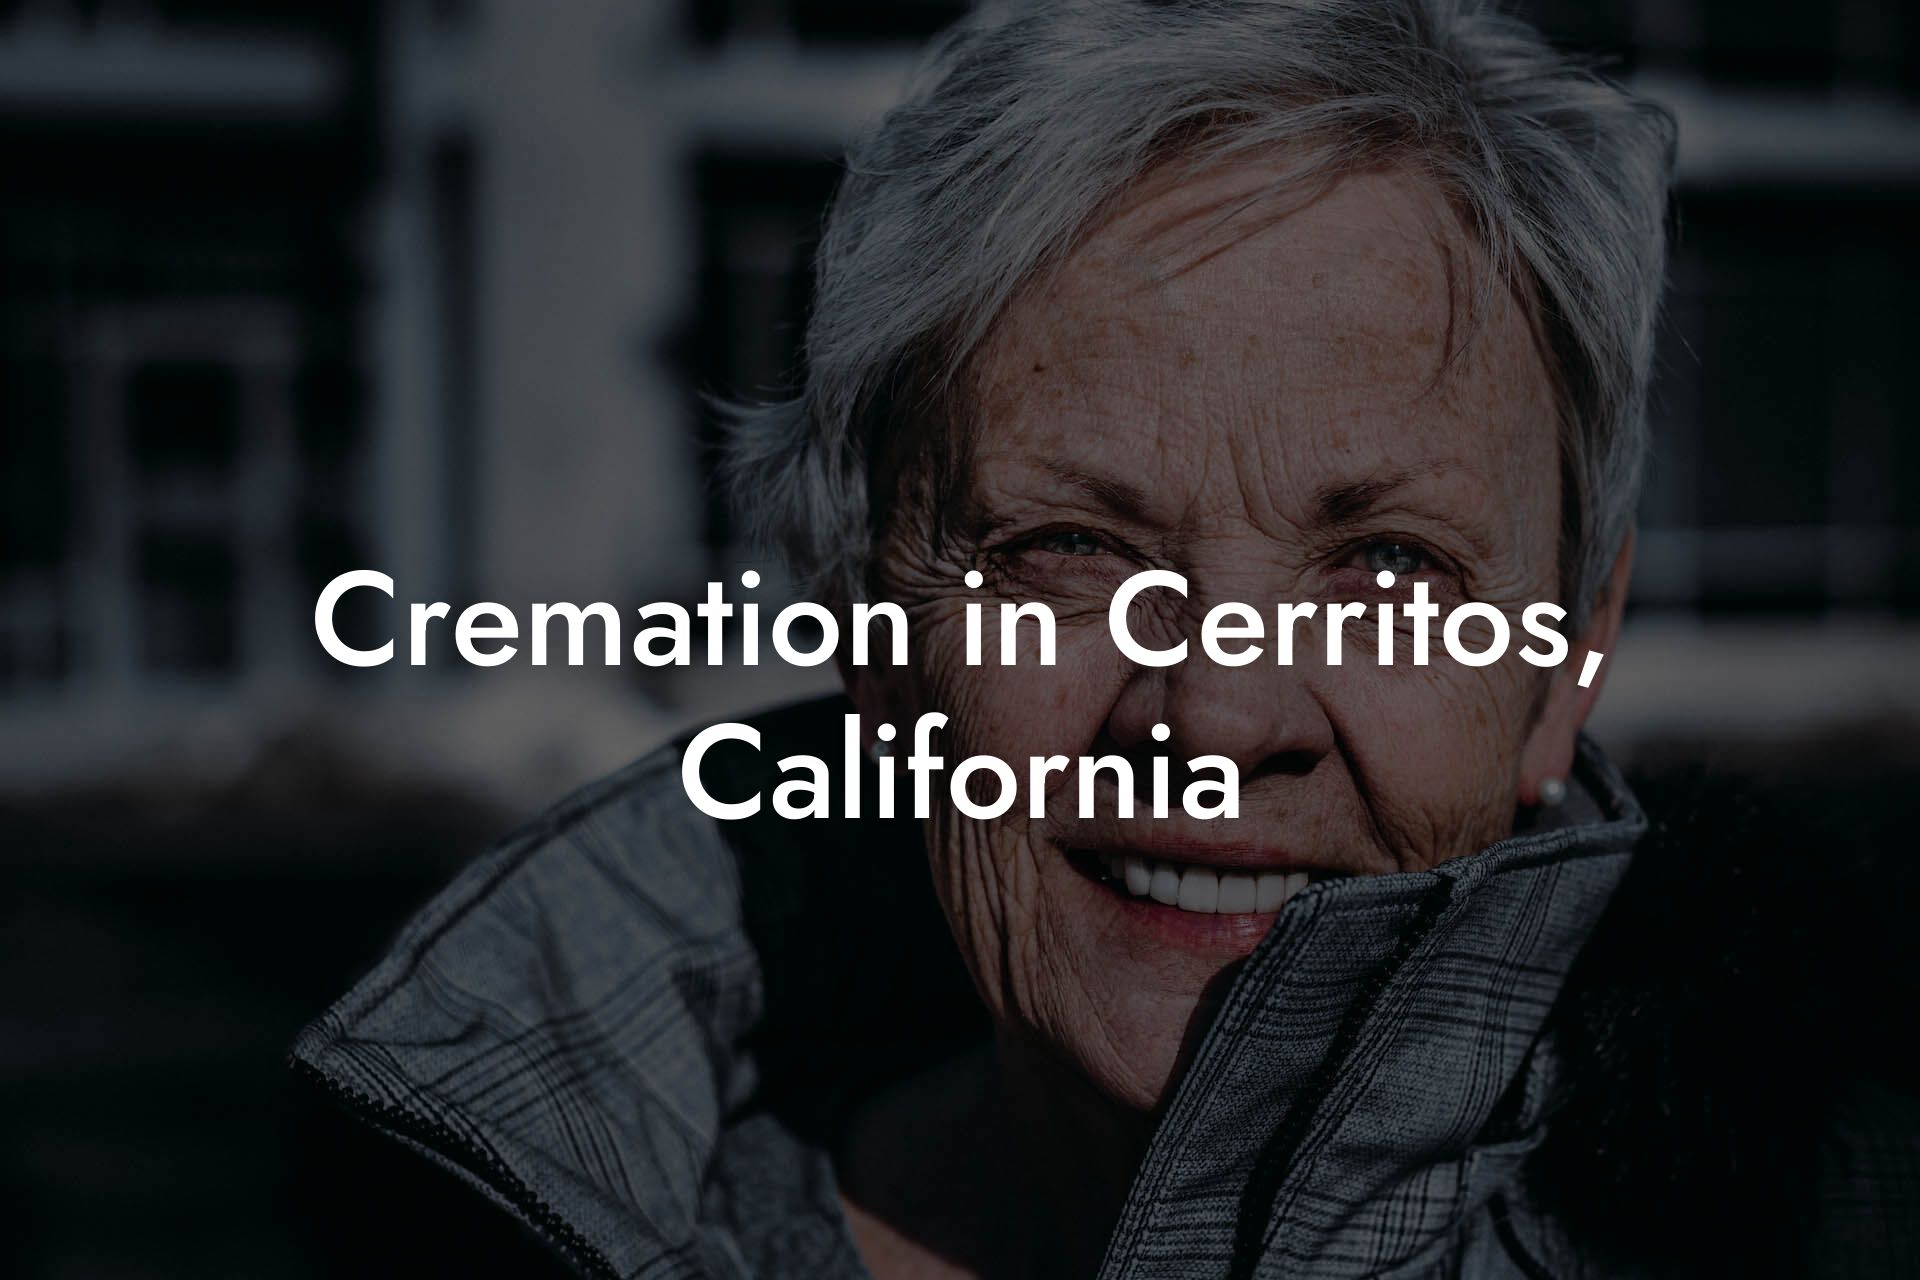 Cremation in Cerritos, California